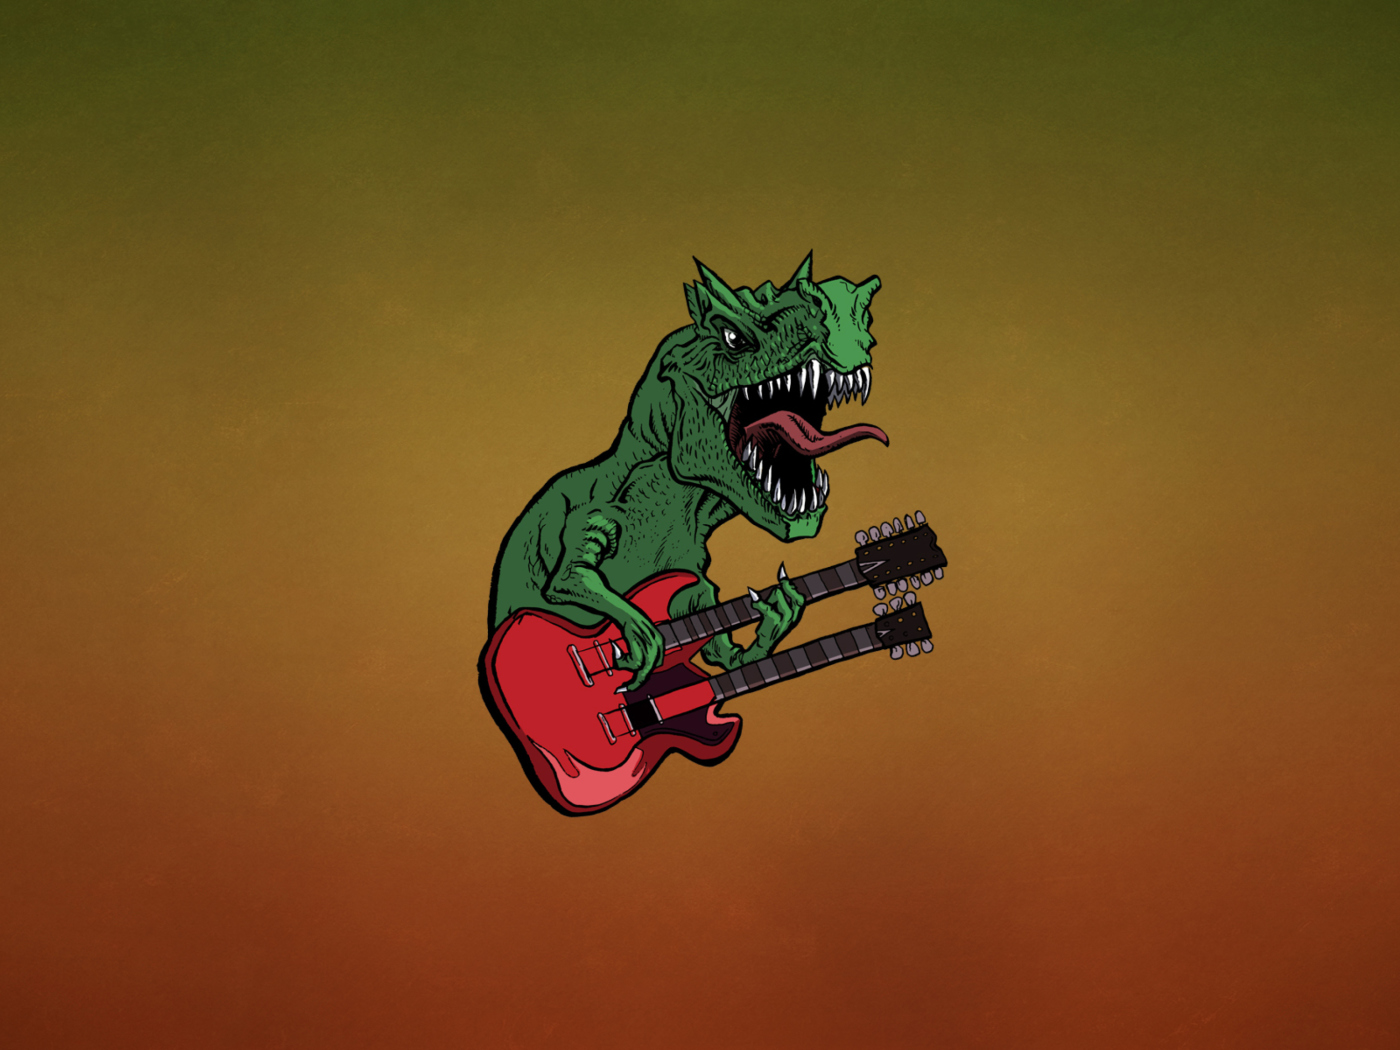 Dinosaur And Guitar Illustration wallpaper 1400x1050